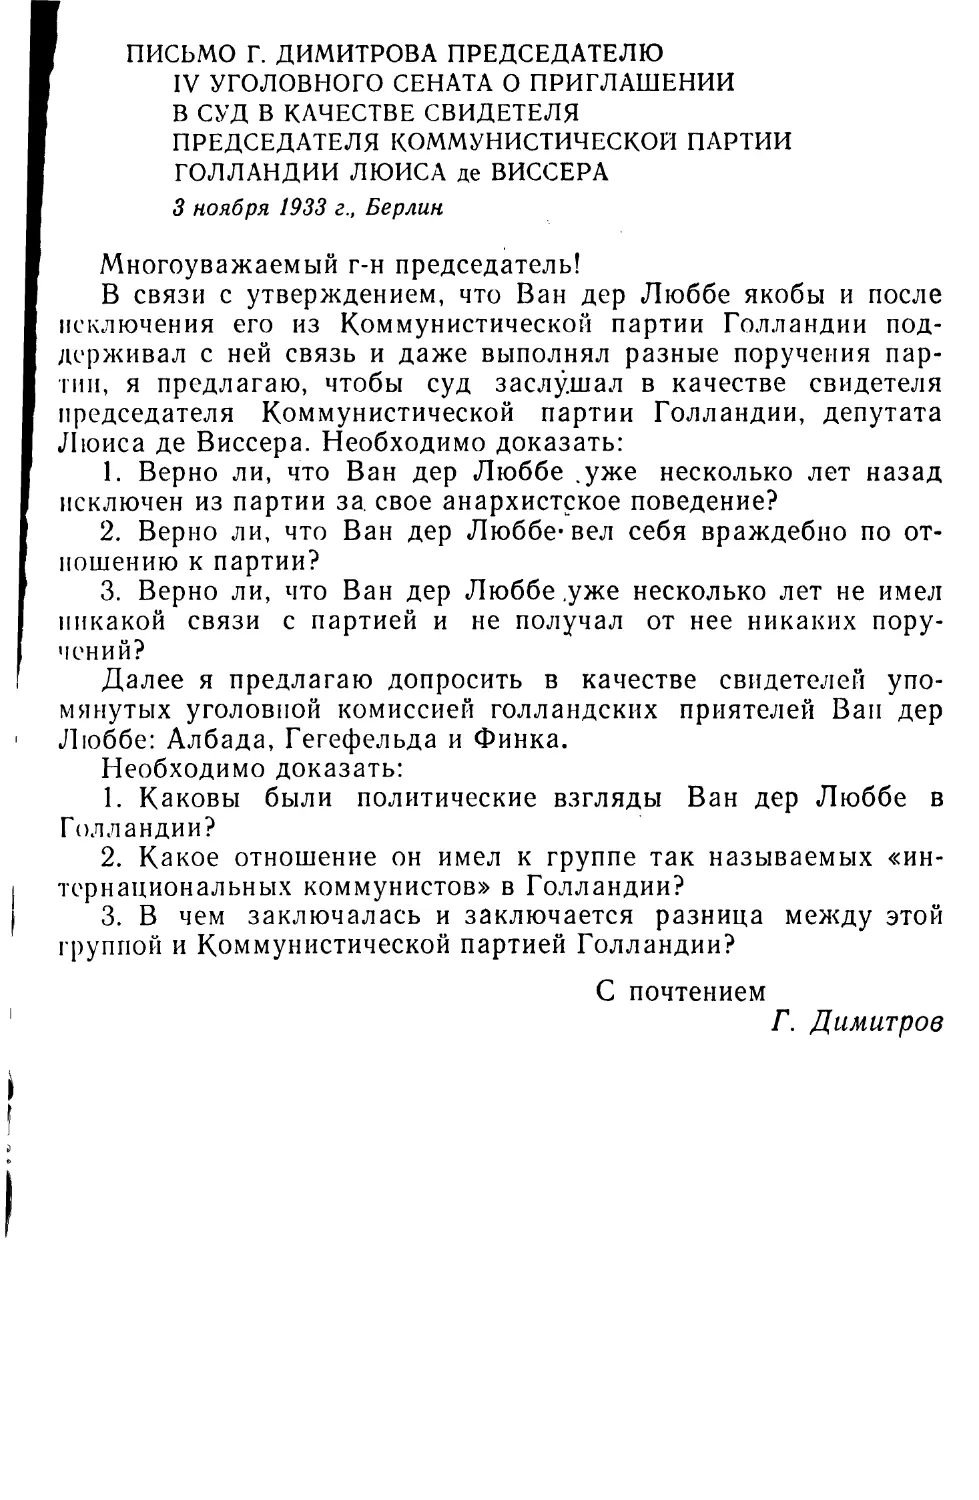 Письмо Г. Димитрова председателю IV уголовного сената о приглашении в суд в качестве свидетеля председателя Коммунистической партии Голландии Люиса де Виссера. 3 ноября 1933 г